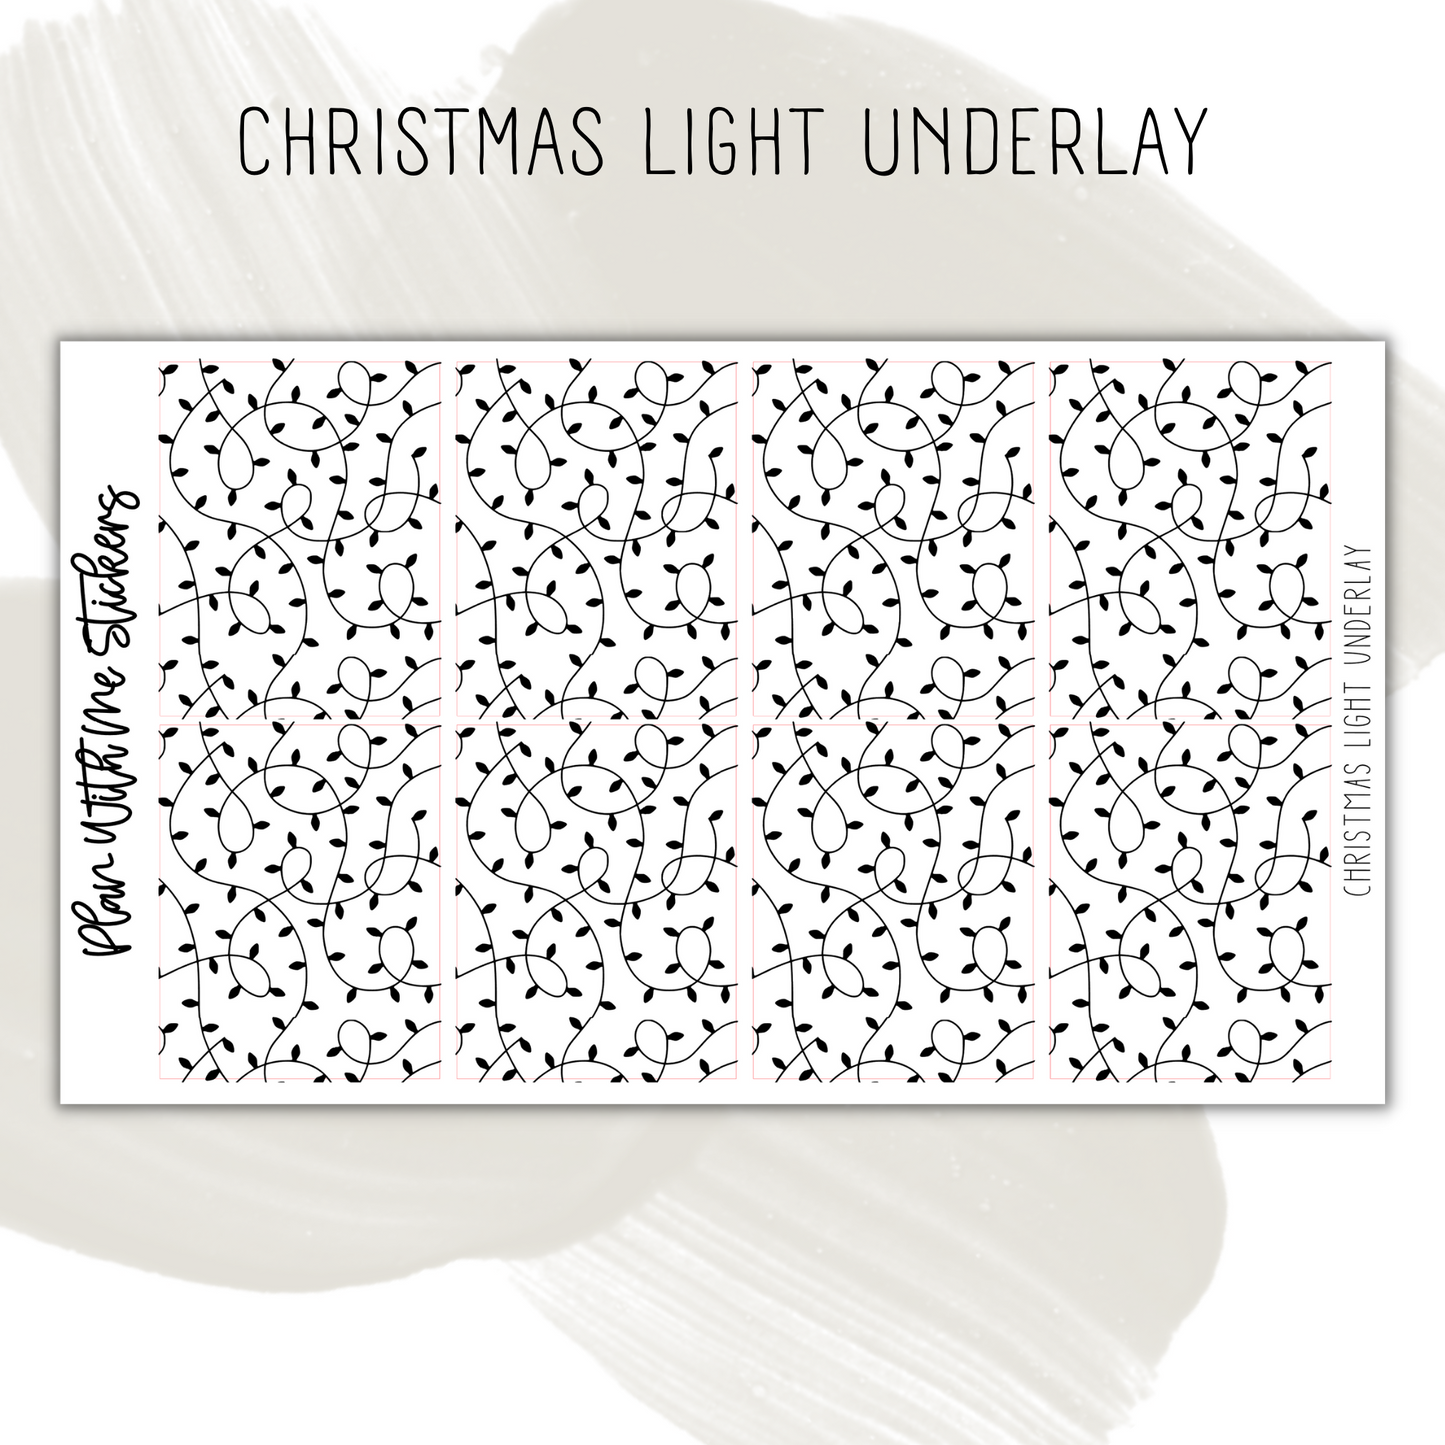 Christmas Light Underlay